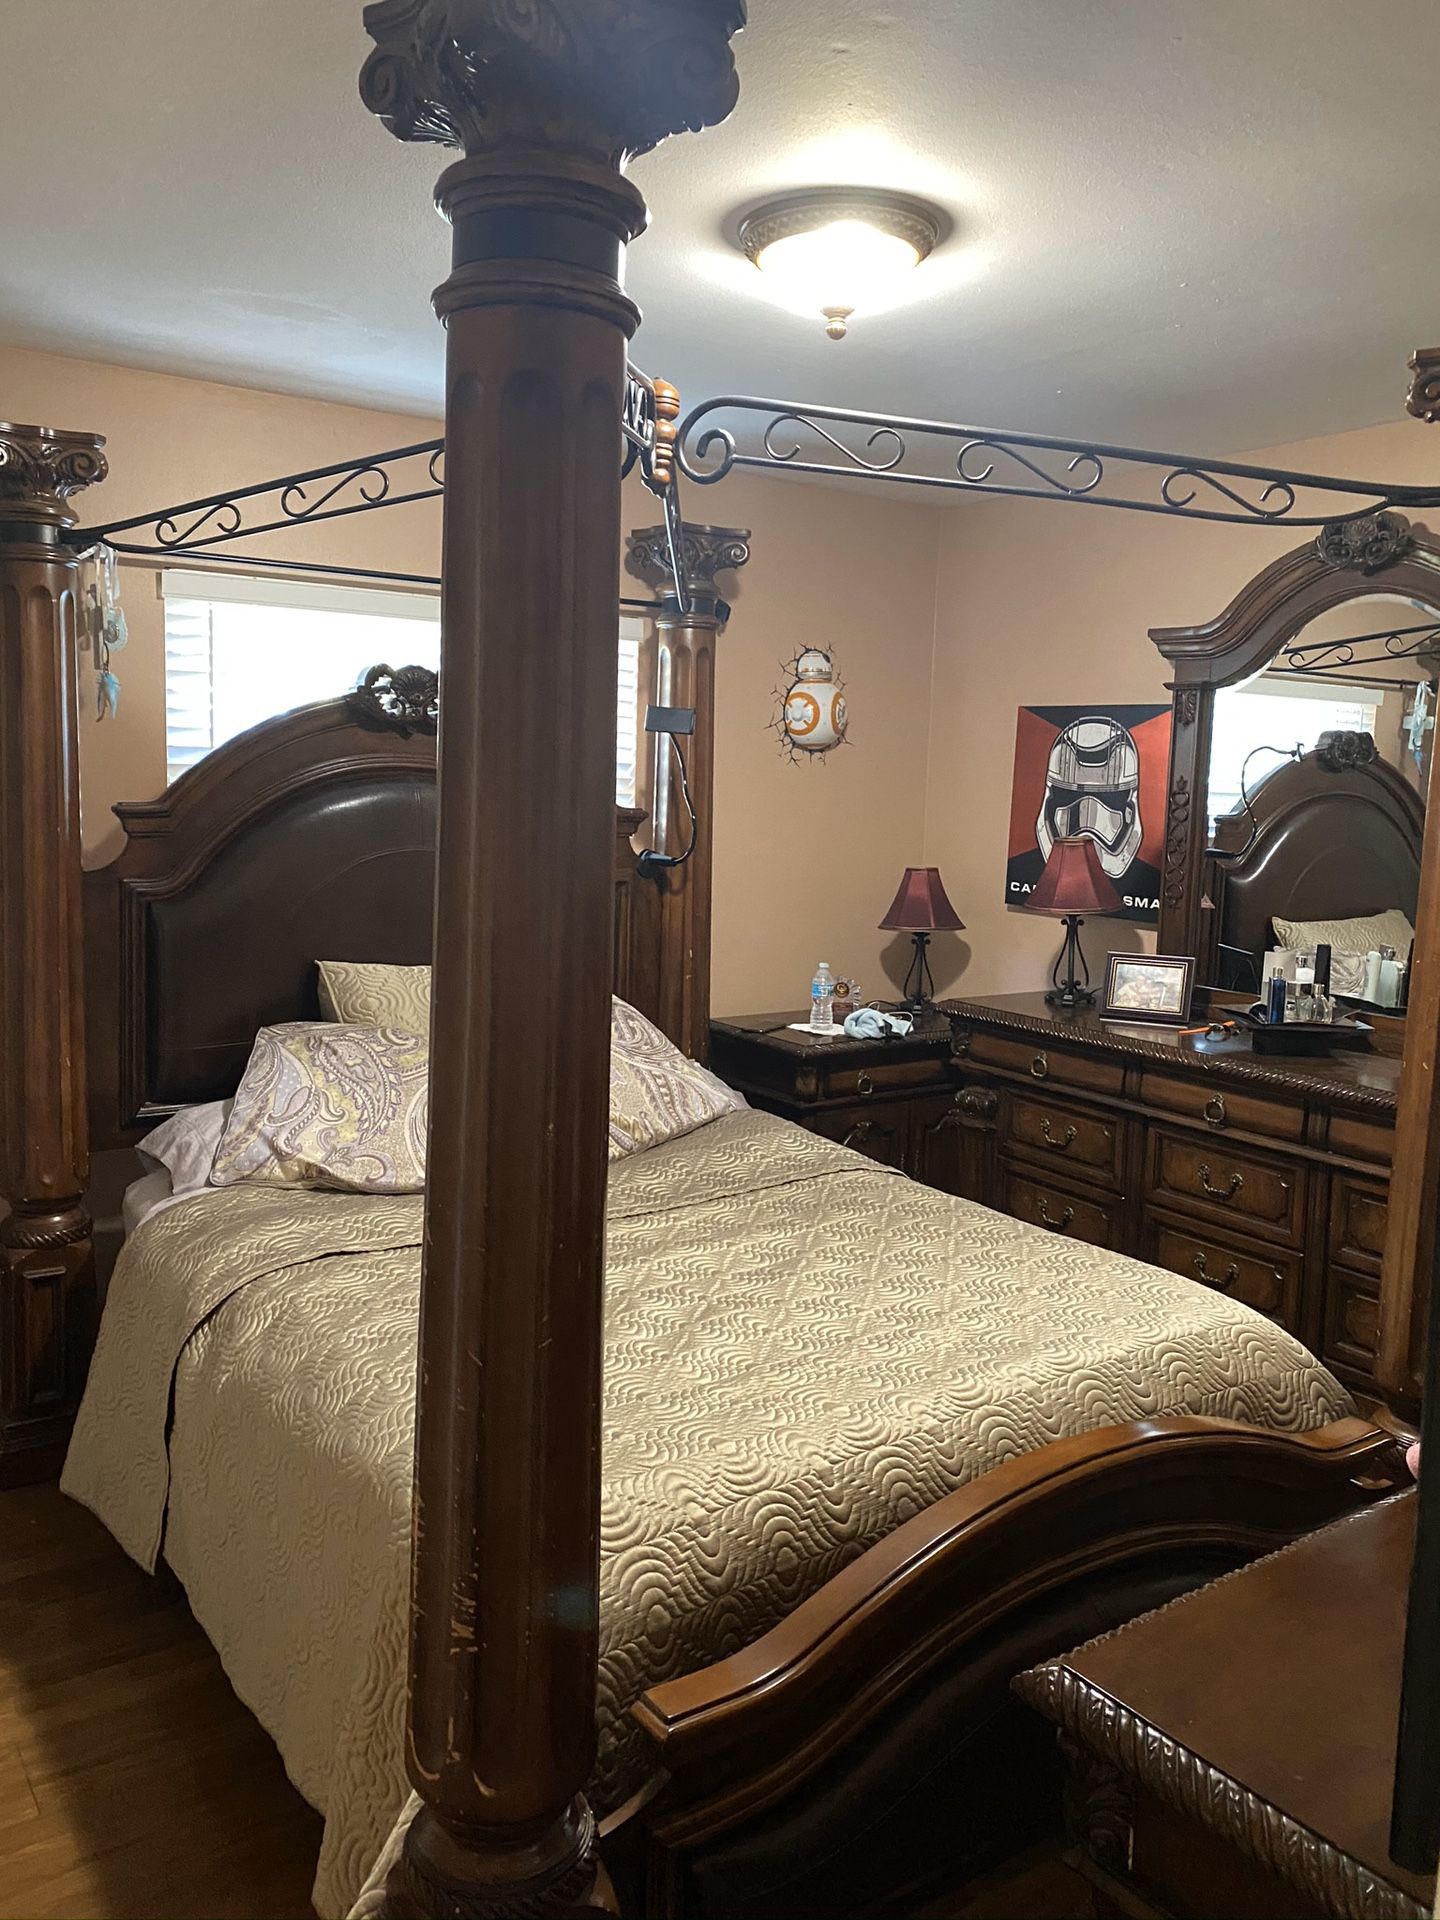 Queen/king bedroom set